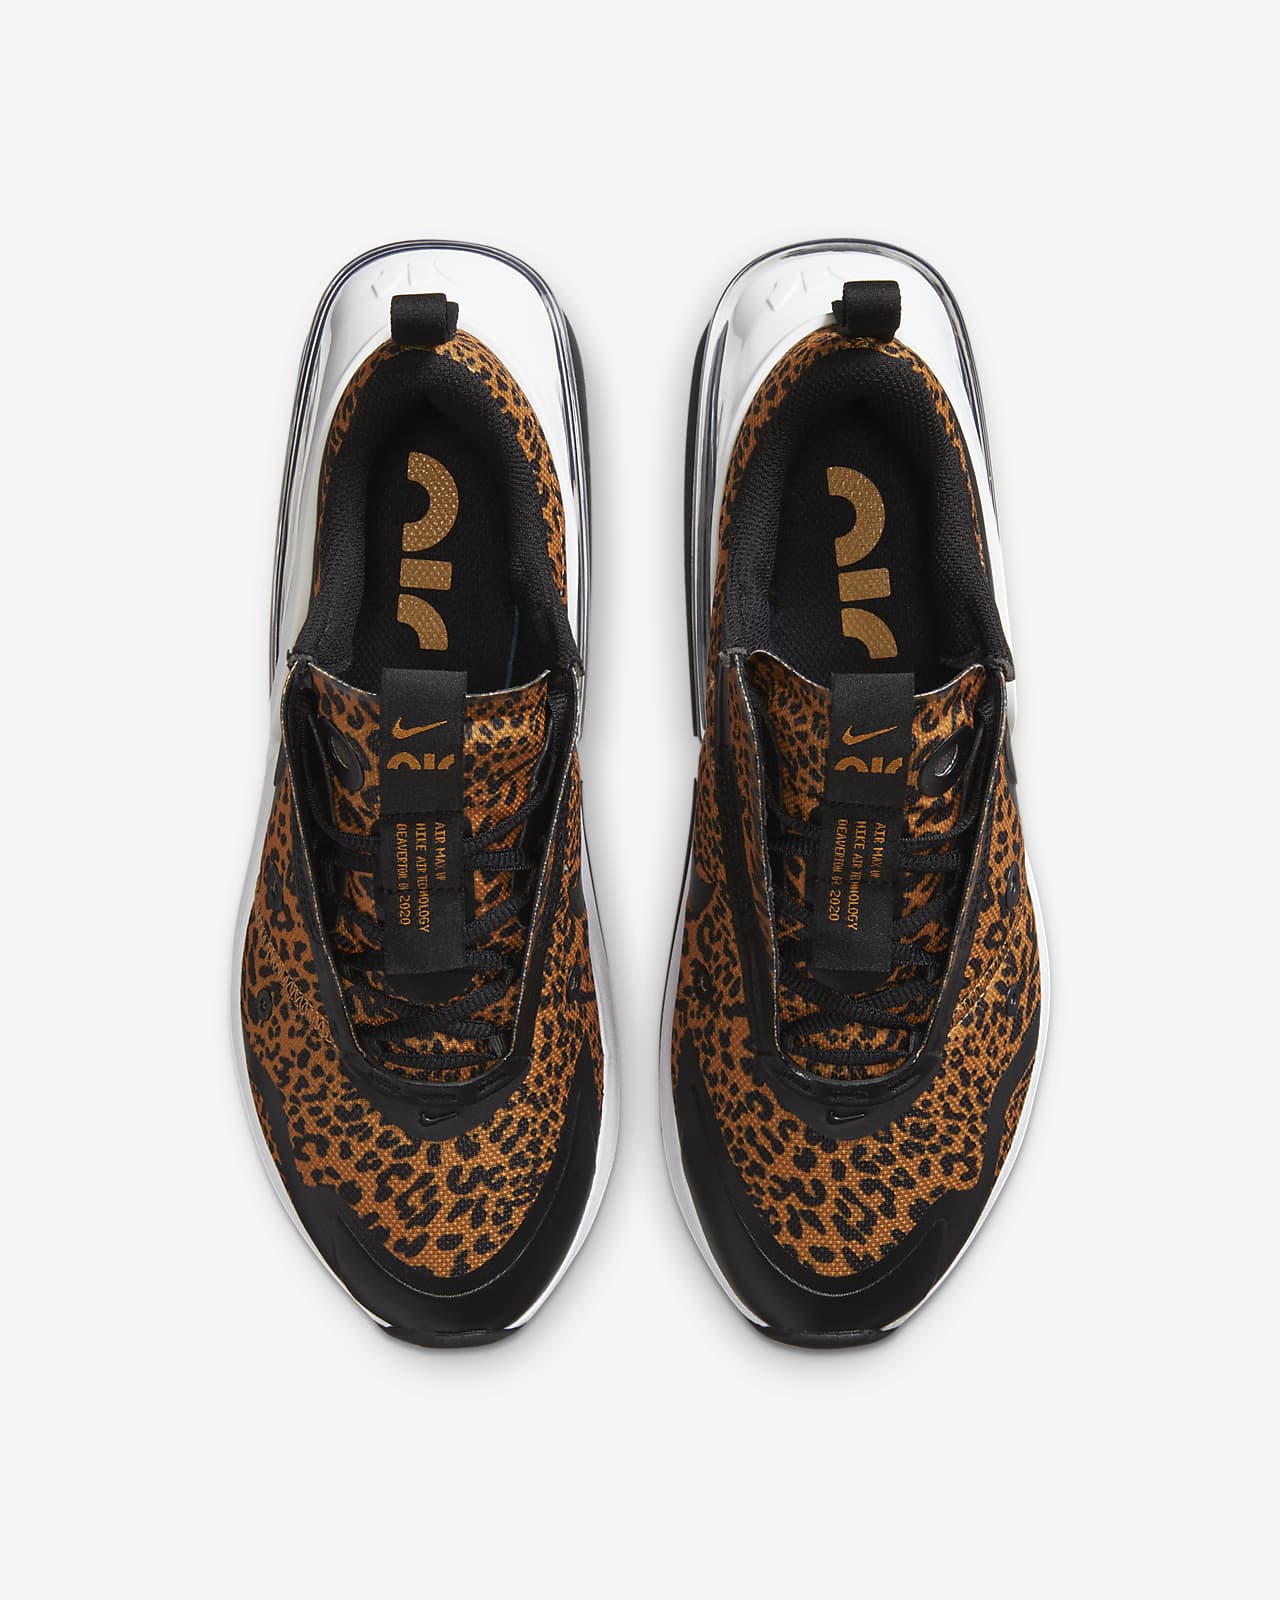 nike cheetah print shoes